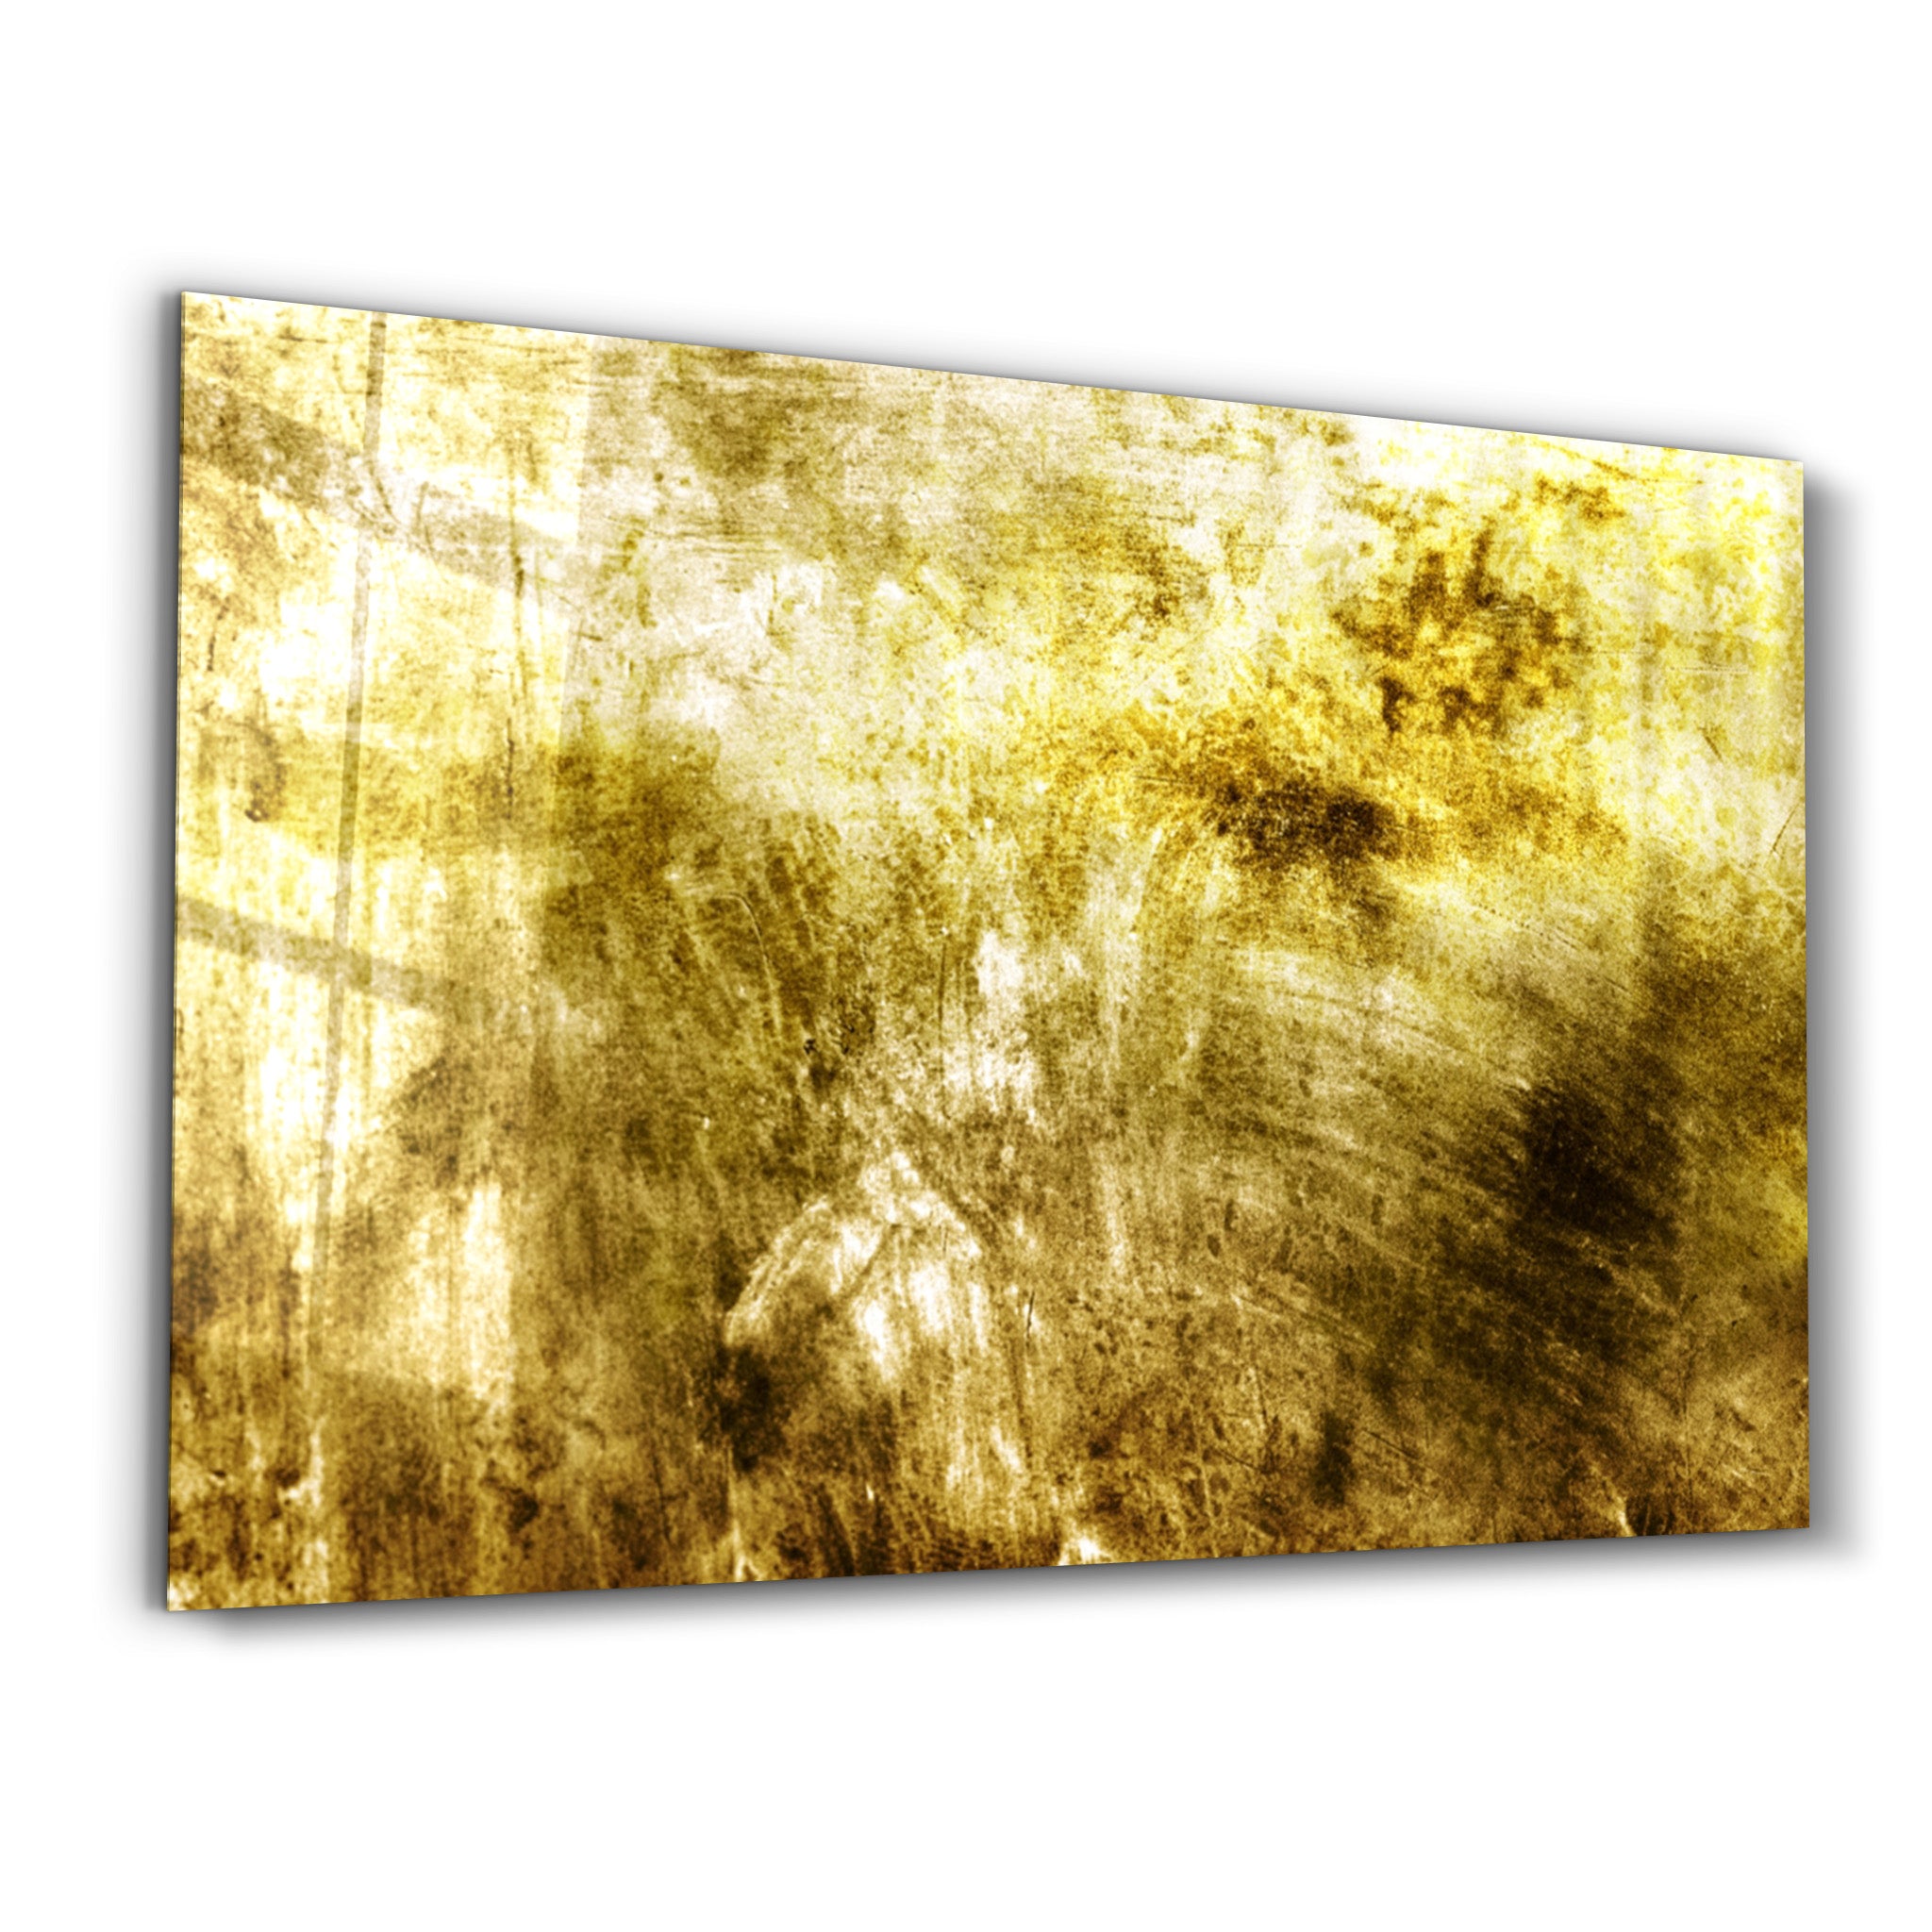 ・"Yellow Abstract Pattern"・Glass Wall Art - ArtDesigna Glass Printing Wall Art